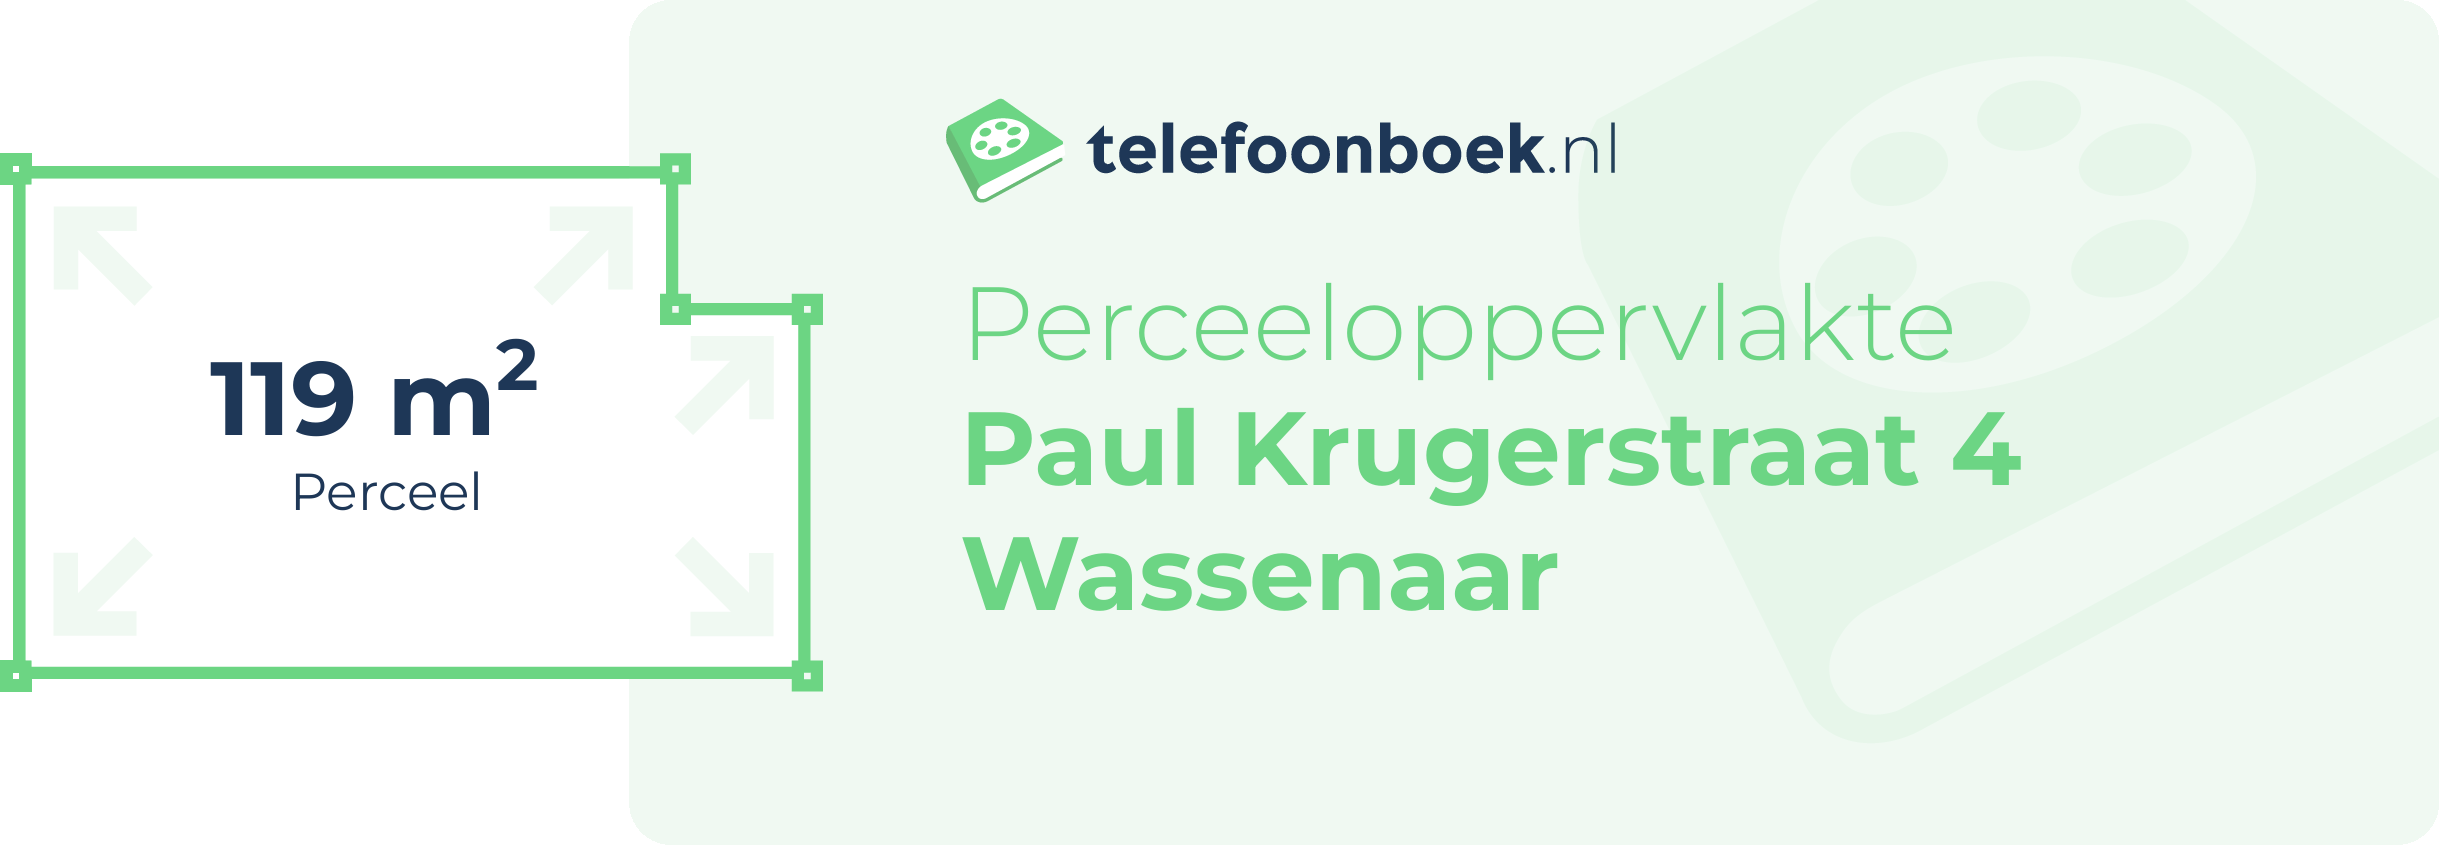 Perceeloppervlakte Paul Krugerstraat 4 Wassenaar